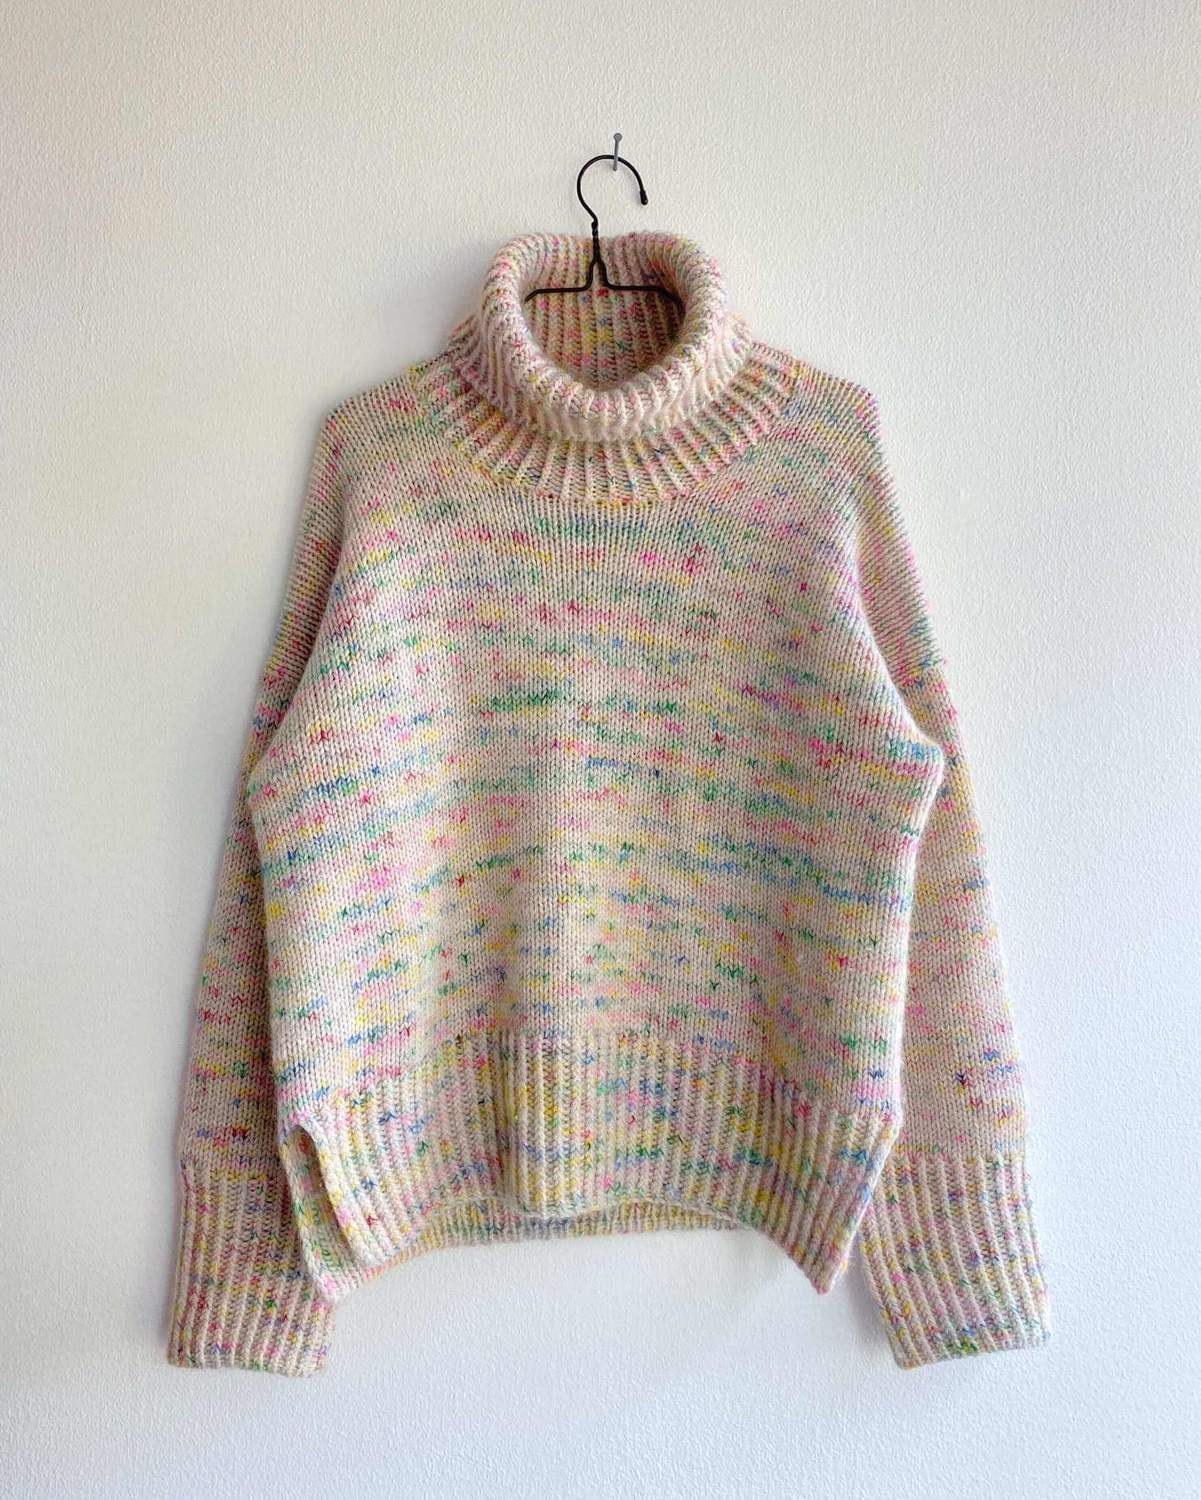 Strikkeopskrift til Wedneysday Sweater fra PetiteKnit.